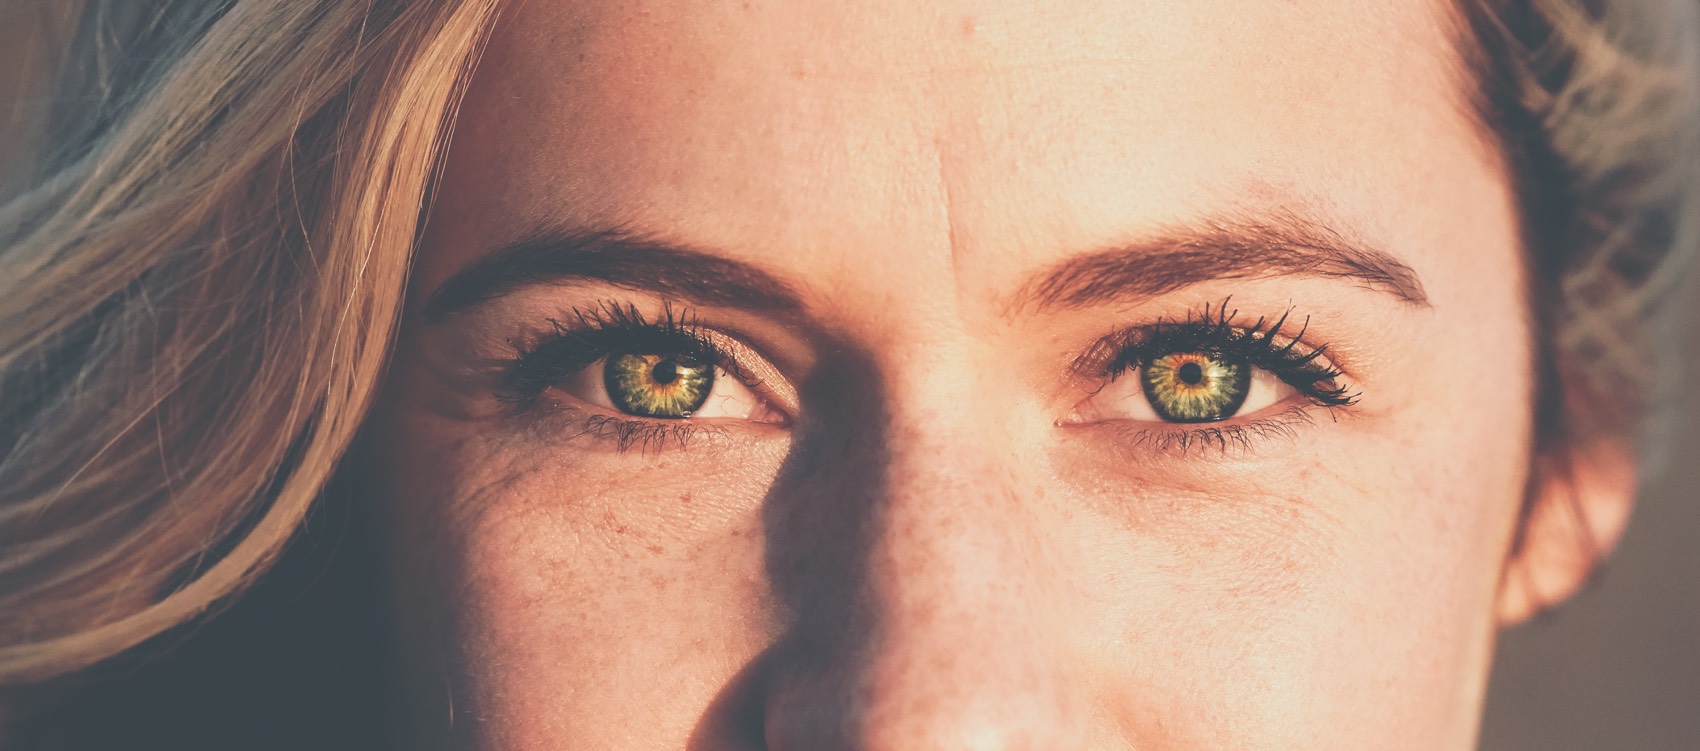 Eine Frau mit blonden Haaren und grünen Augen. Nase und Mund sind nicht sichtbar.